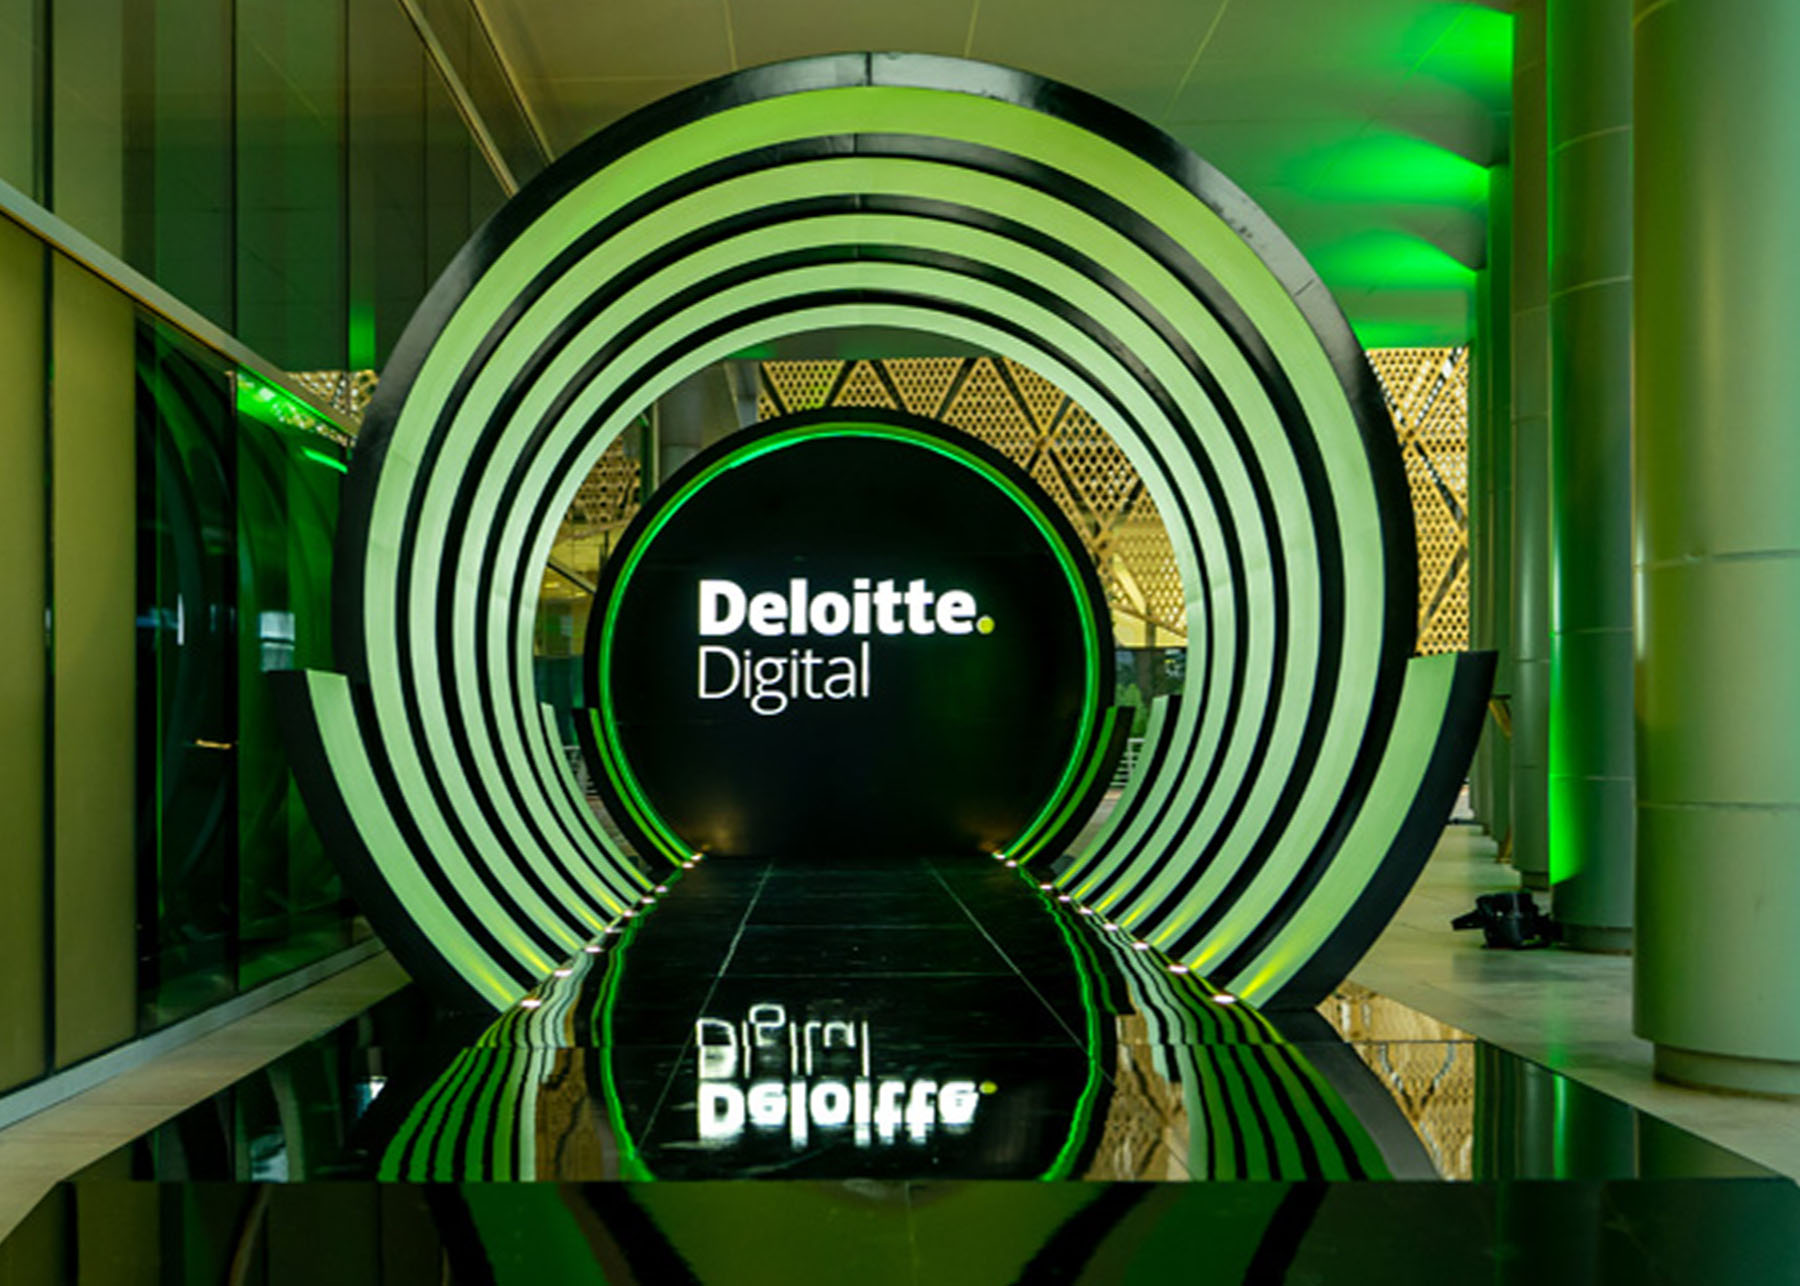 Deloitte custom-made designed entrance